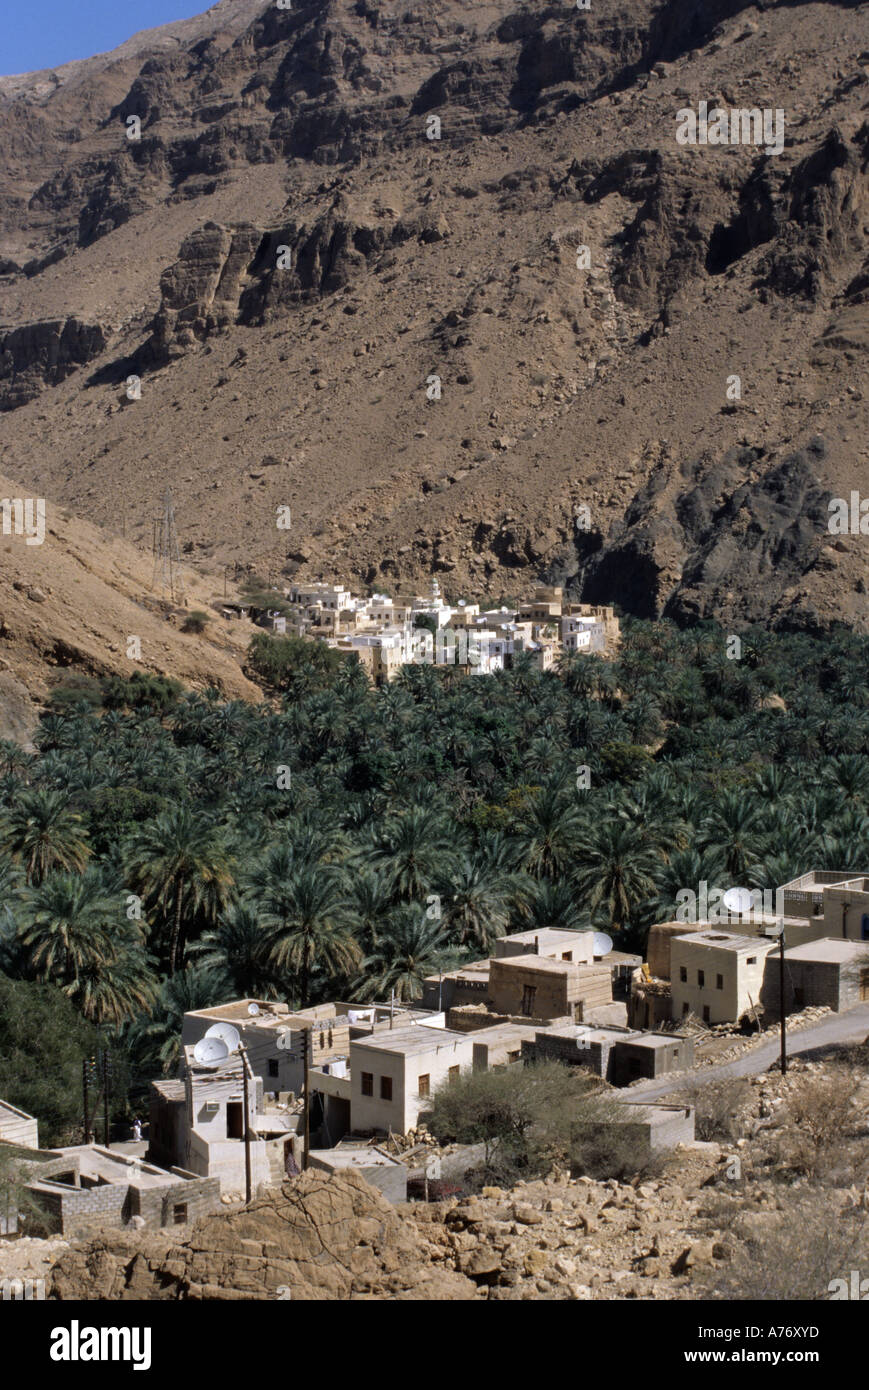 Wadi Tiwi Date Palms and Village, Oman Stock Photo